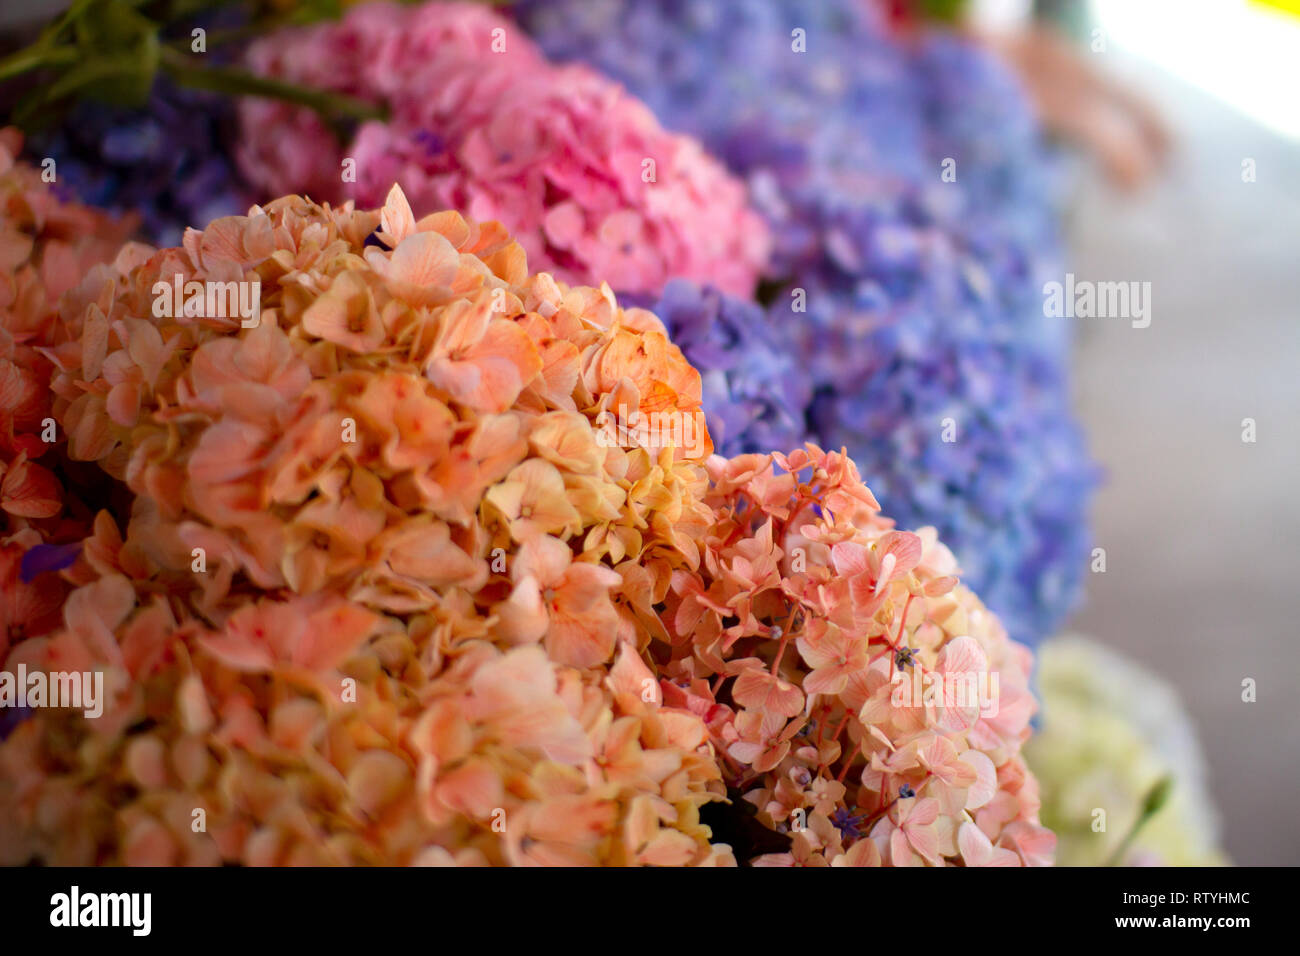 Natürlichen schönen Blumen in Pastell Tönen (Pfirsich, lila, pink), wunderschöne Blumensträuße im Blumengeschäft. Feder Konzept. Stockfoto